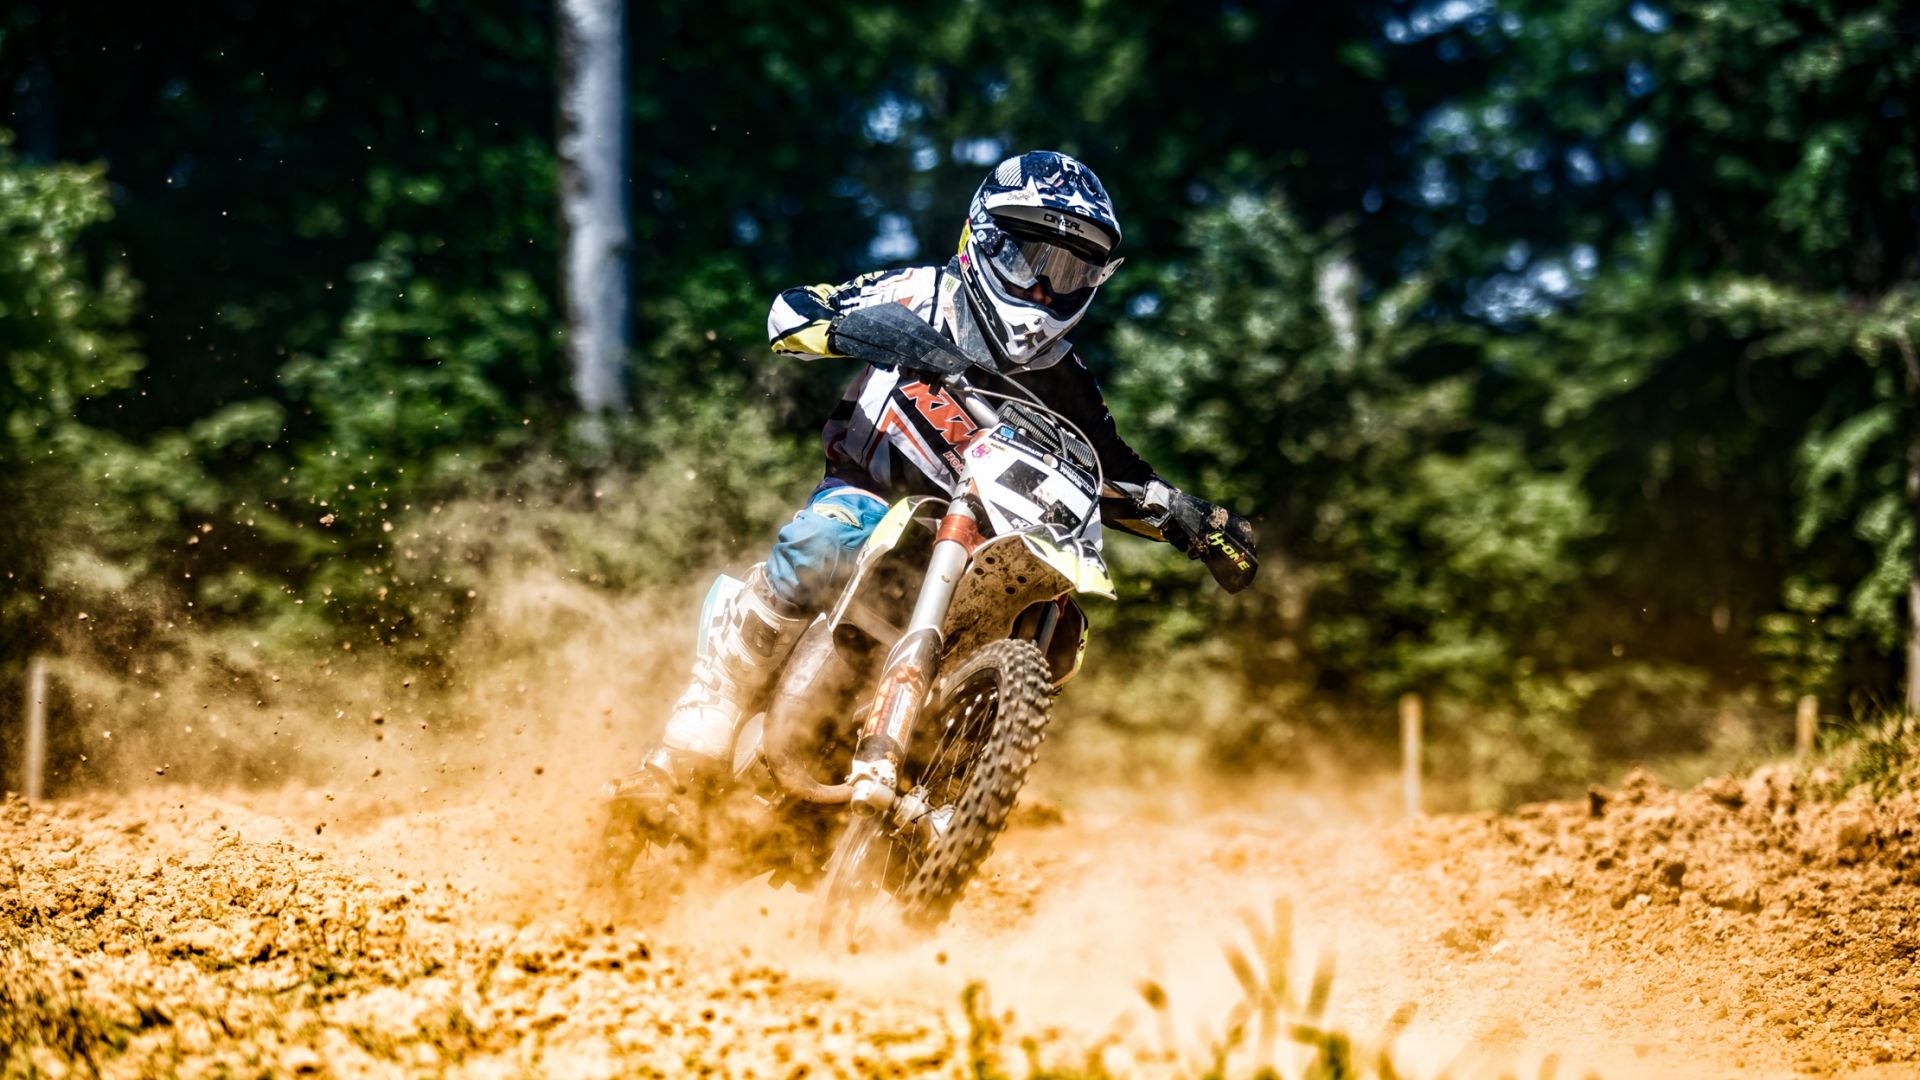 Wallpaper Motocross, motorcycle, mud race, biker, sports